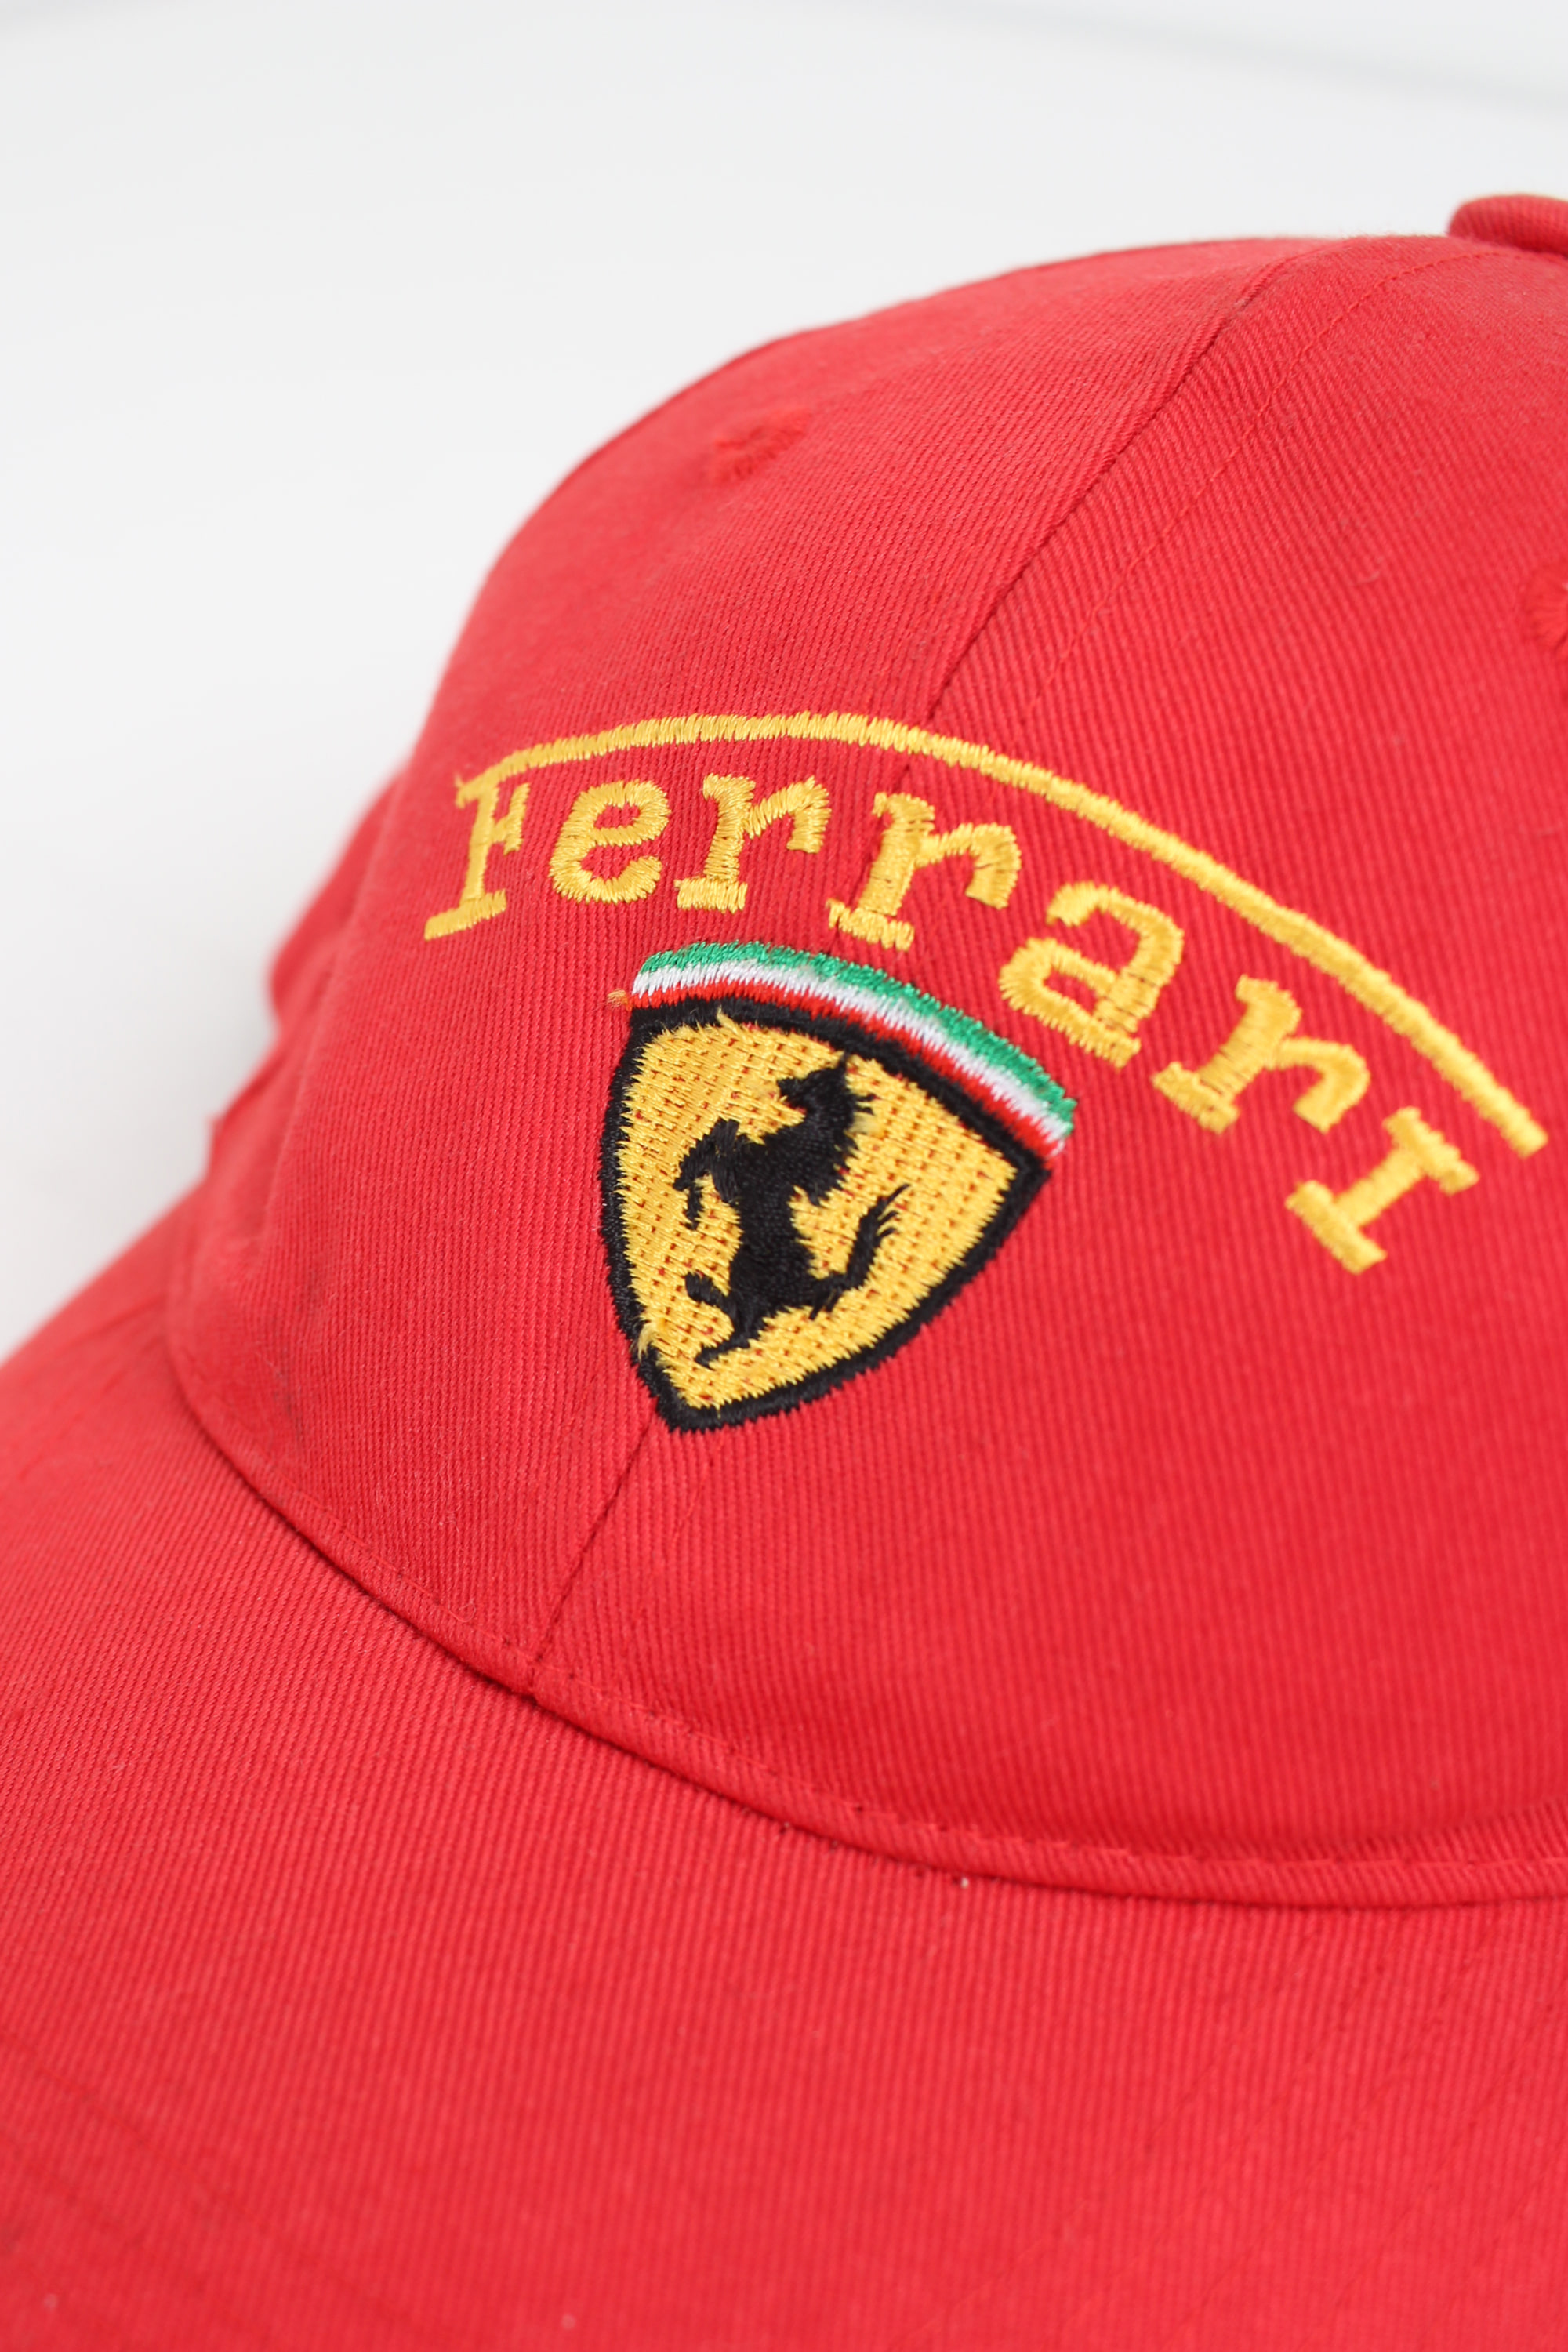 Ferrari ball cap